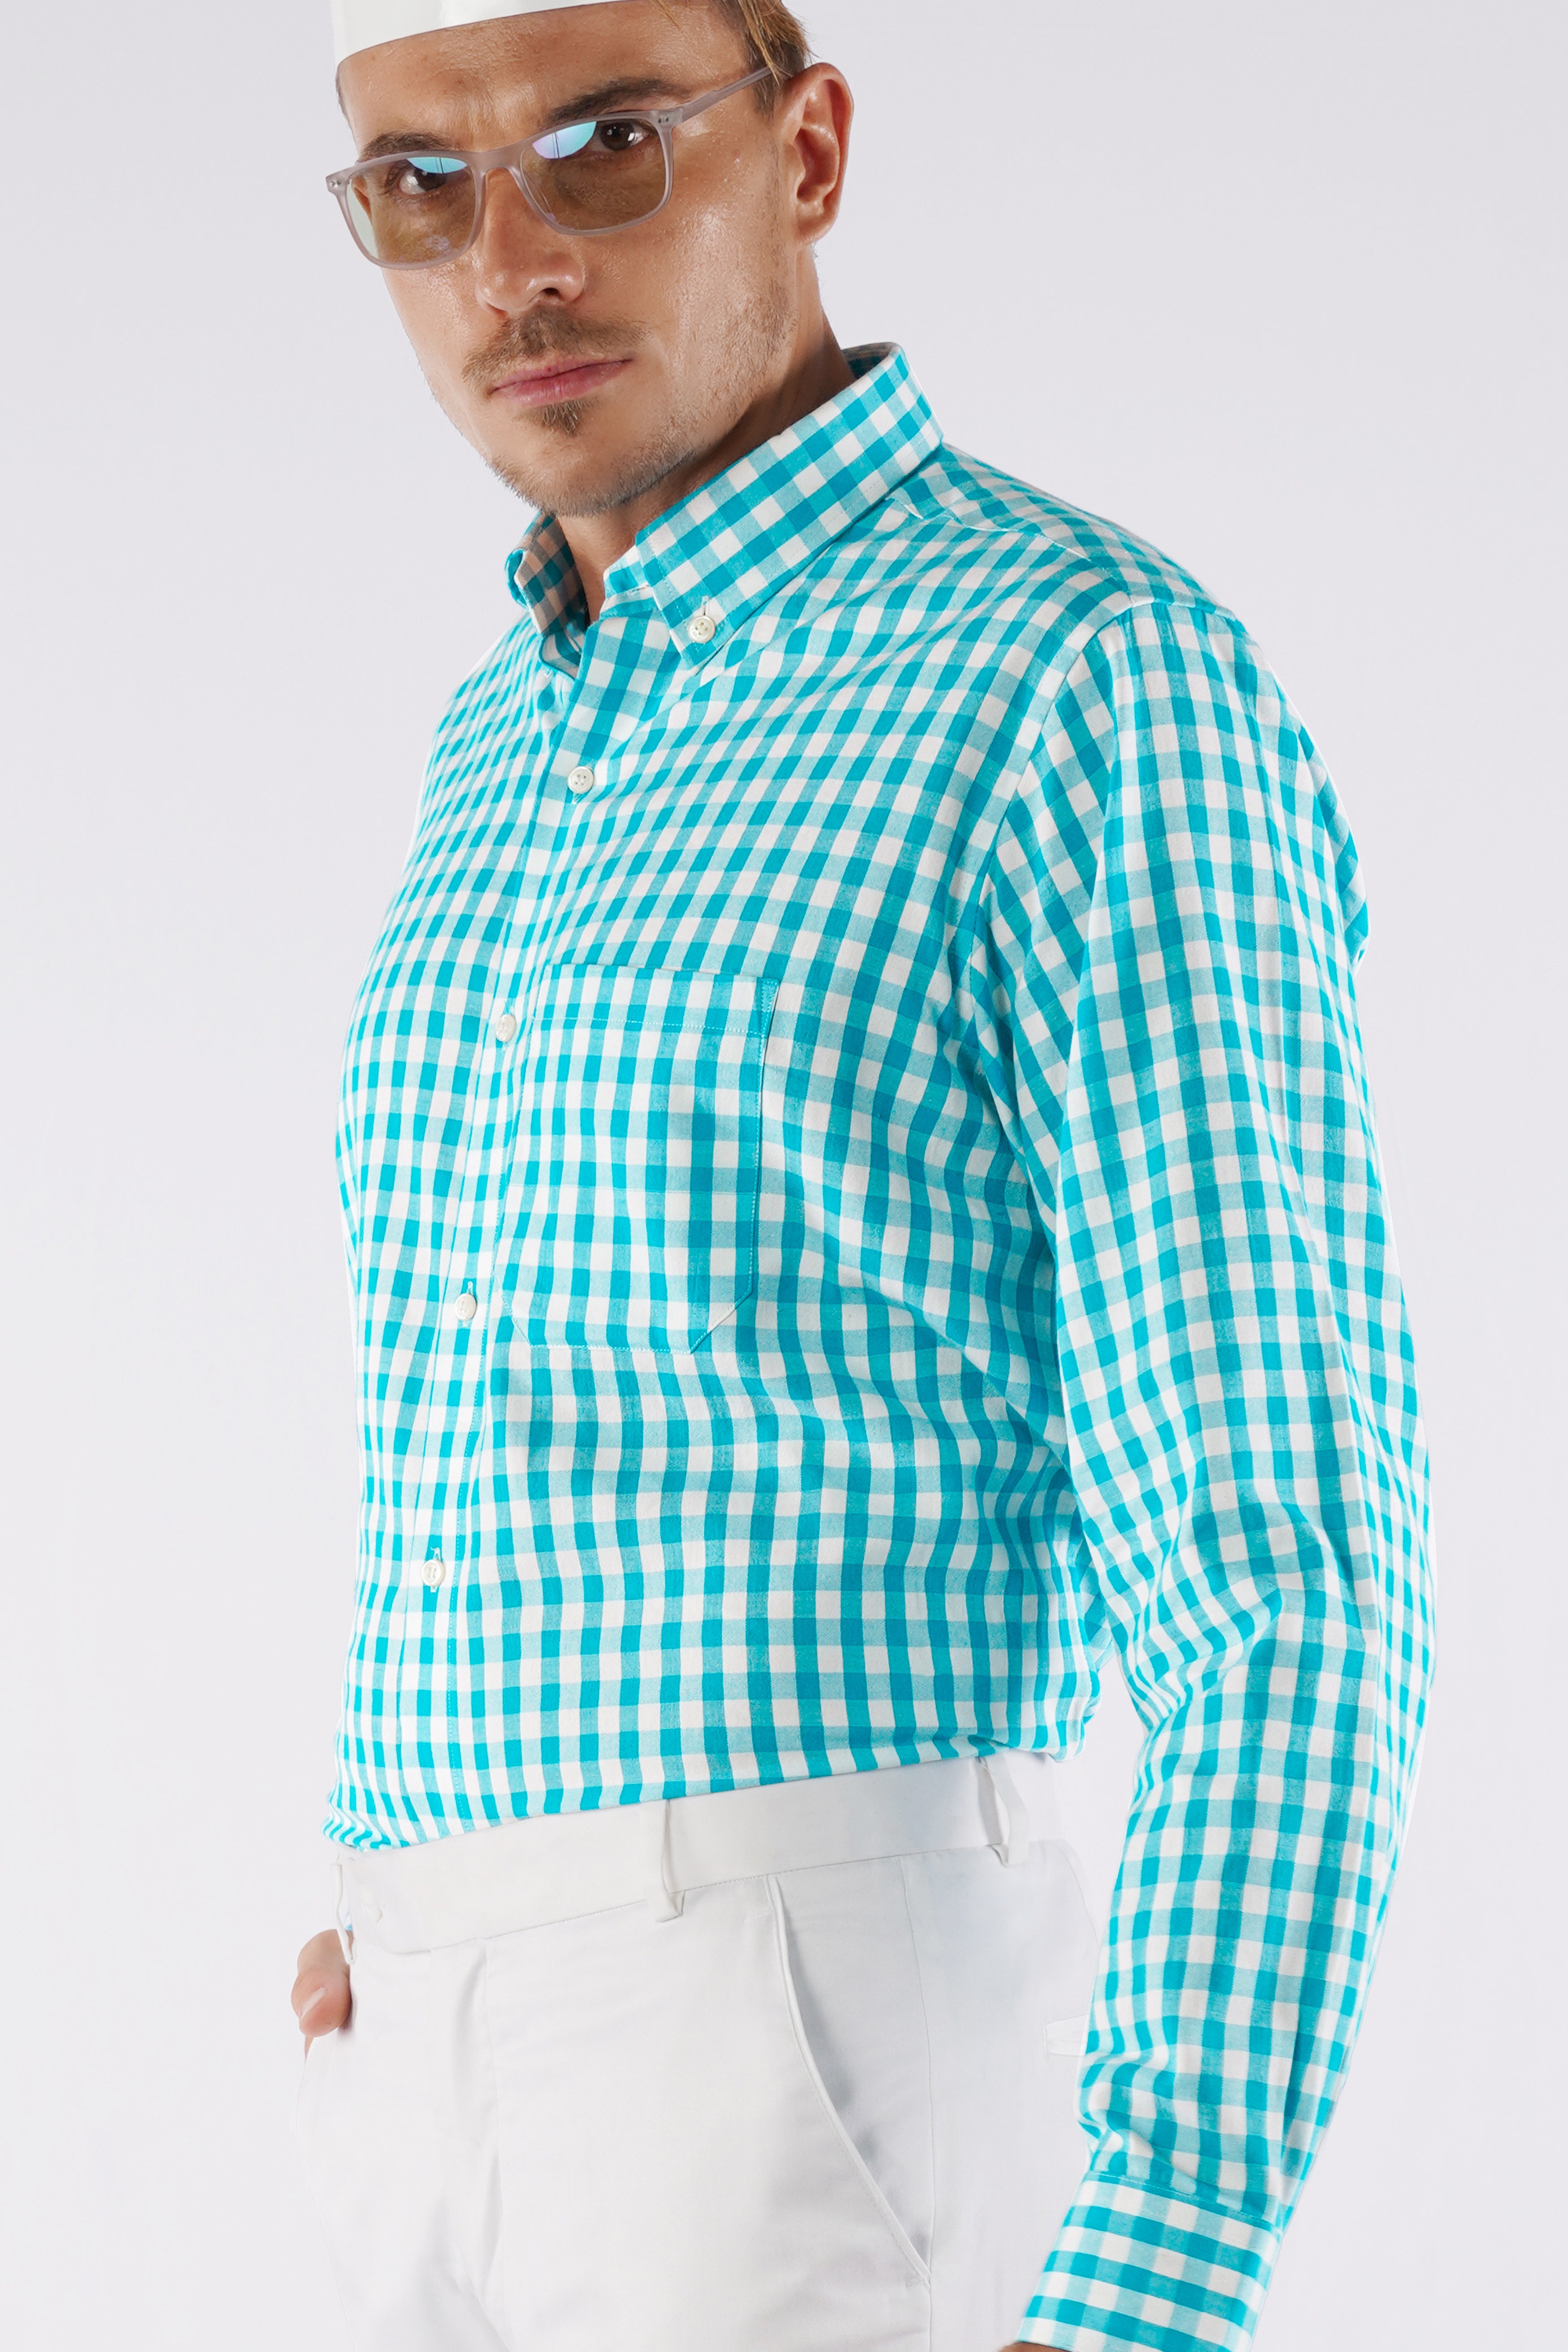 Cerulean Aqua Blue and White Checkered Royal Oxford Shirt